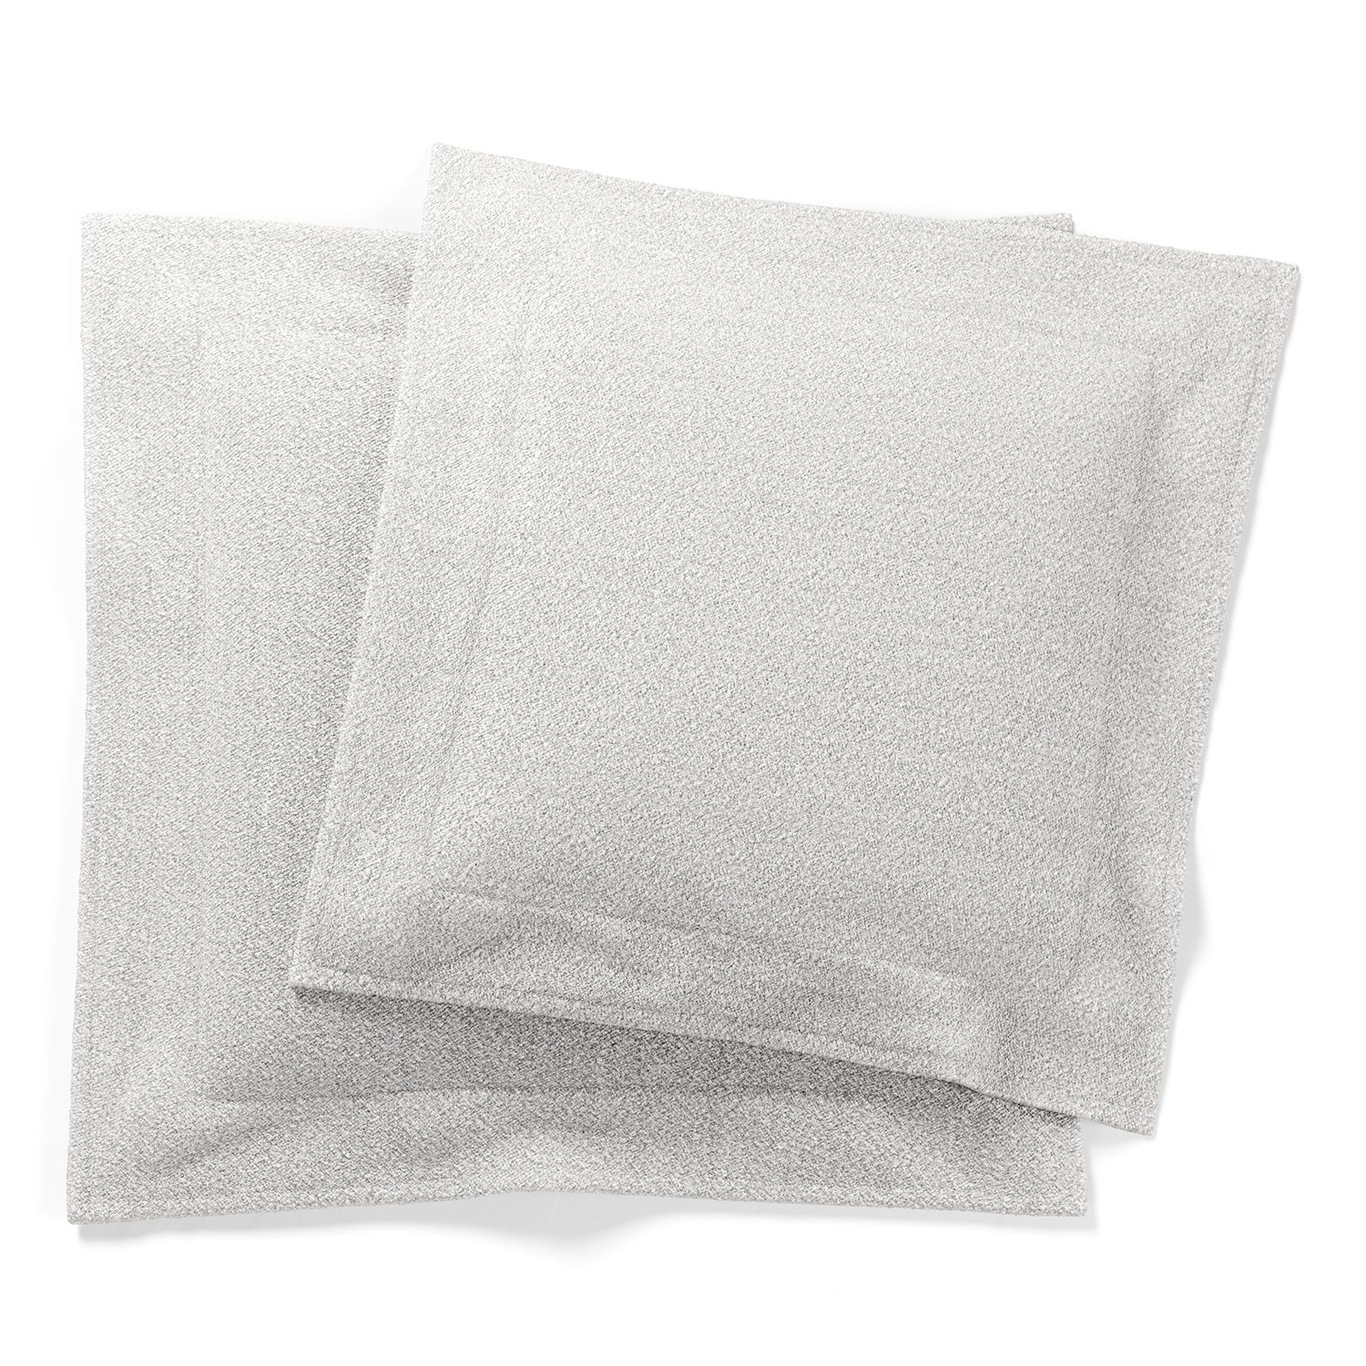 Grand Cushions 2-pack, Steam White